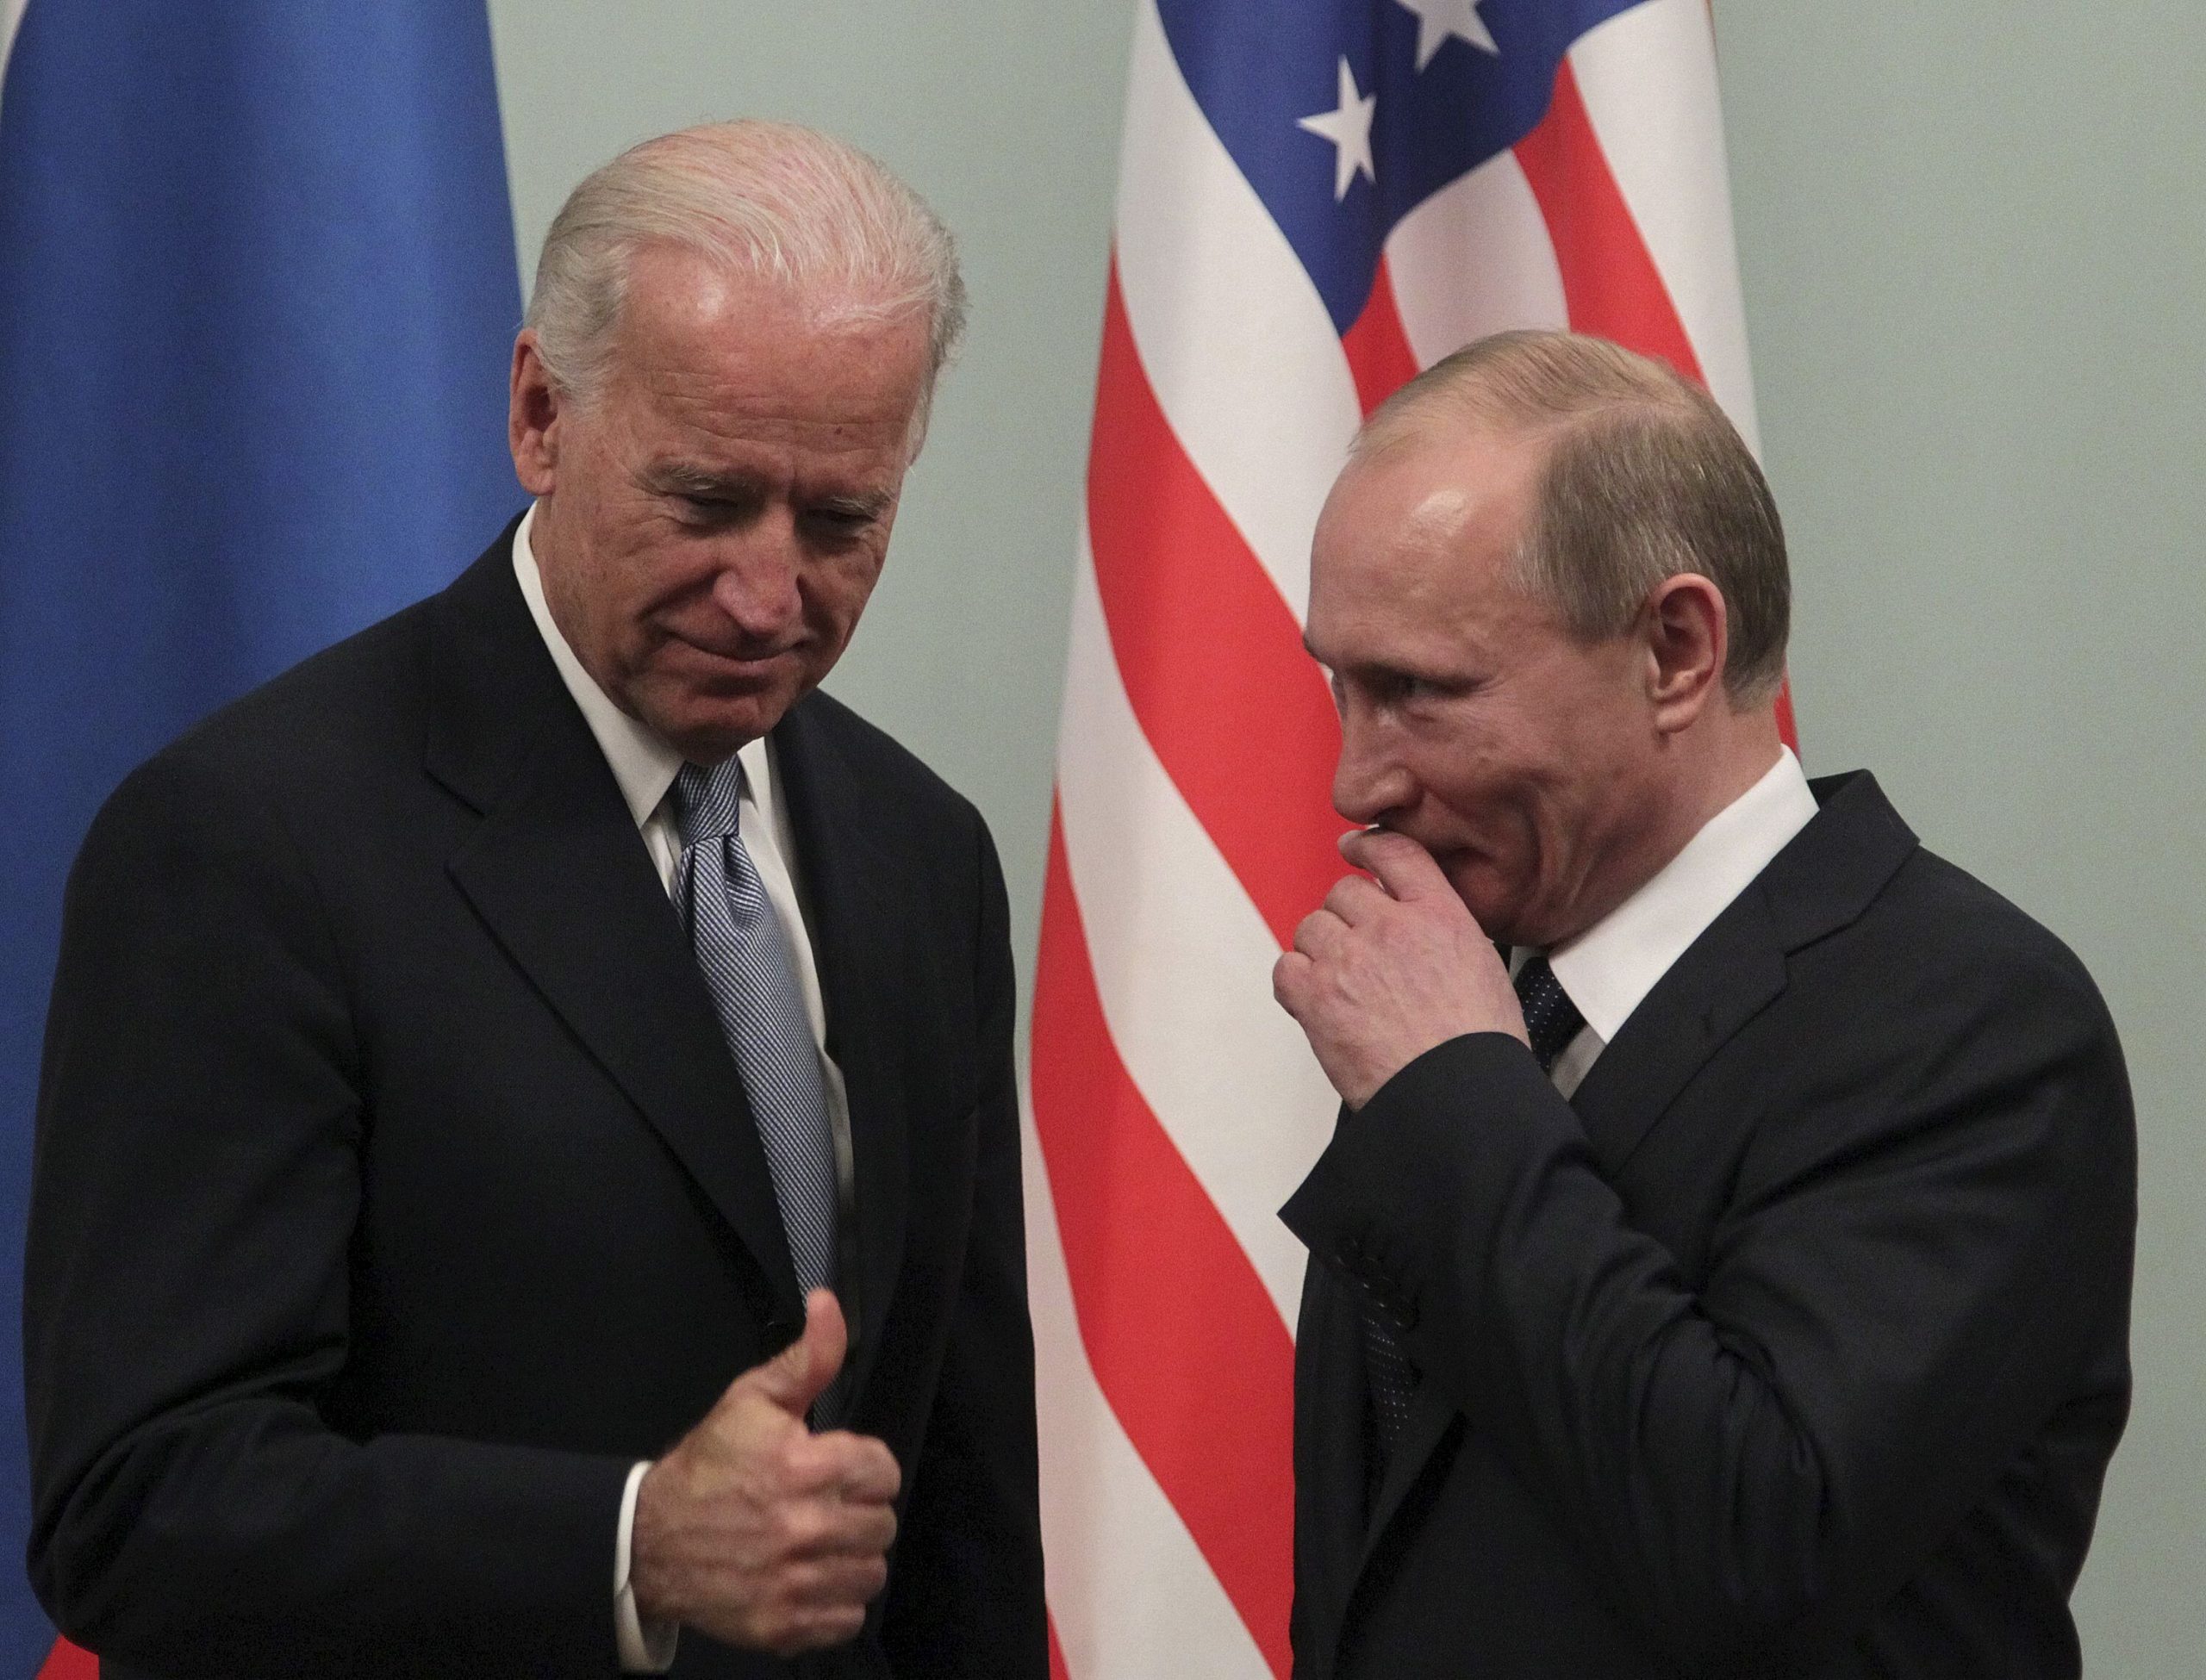 Biden habla con Putin sobre extensión del acuerdo nuclear,